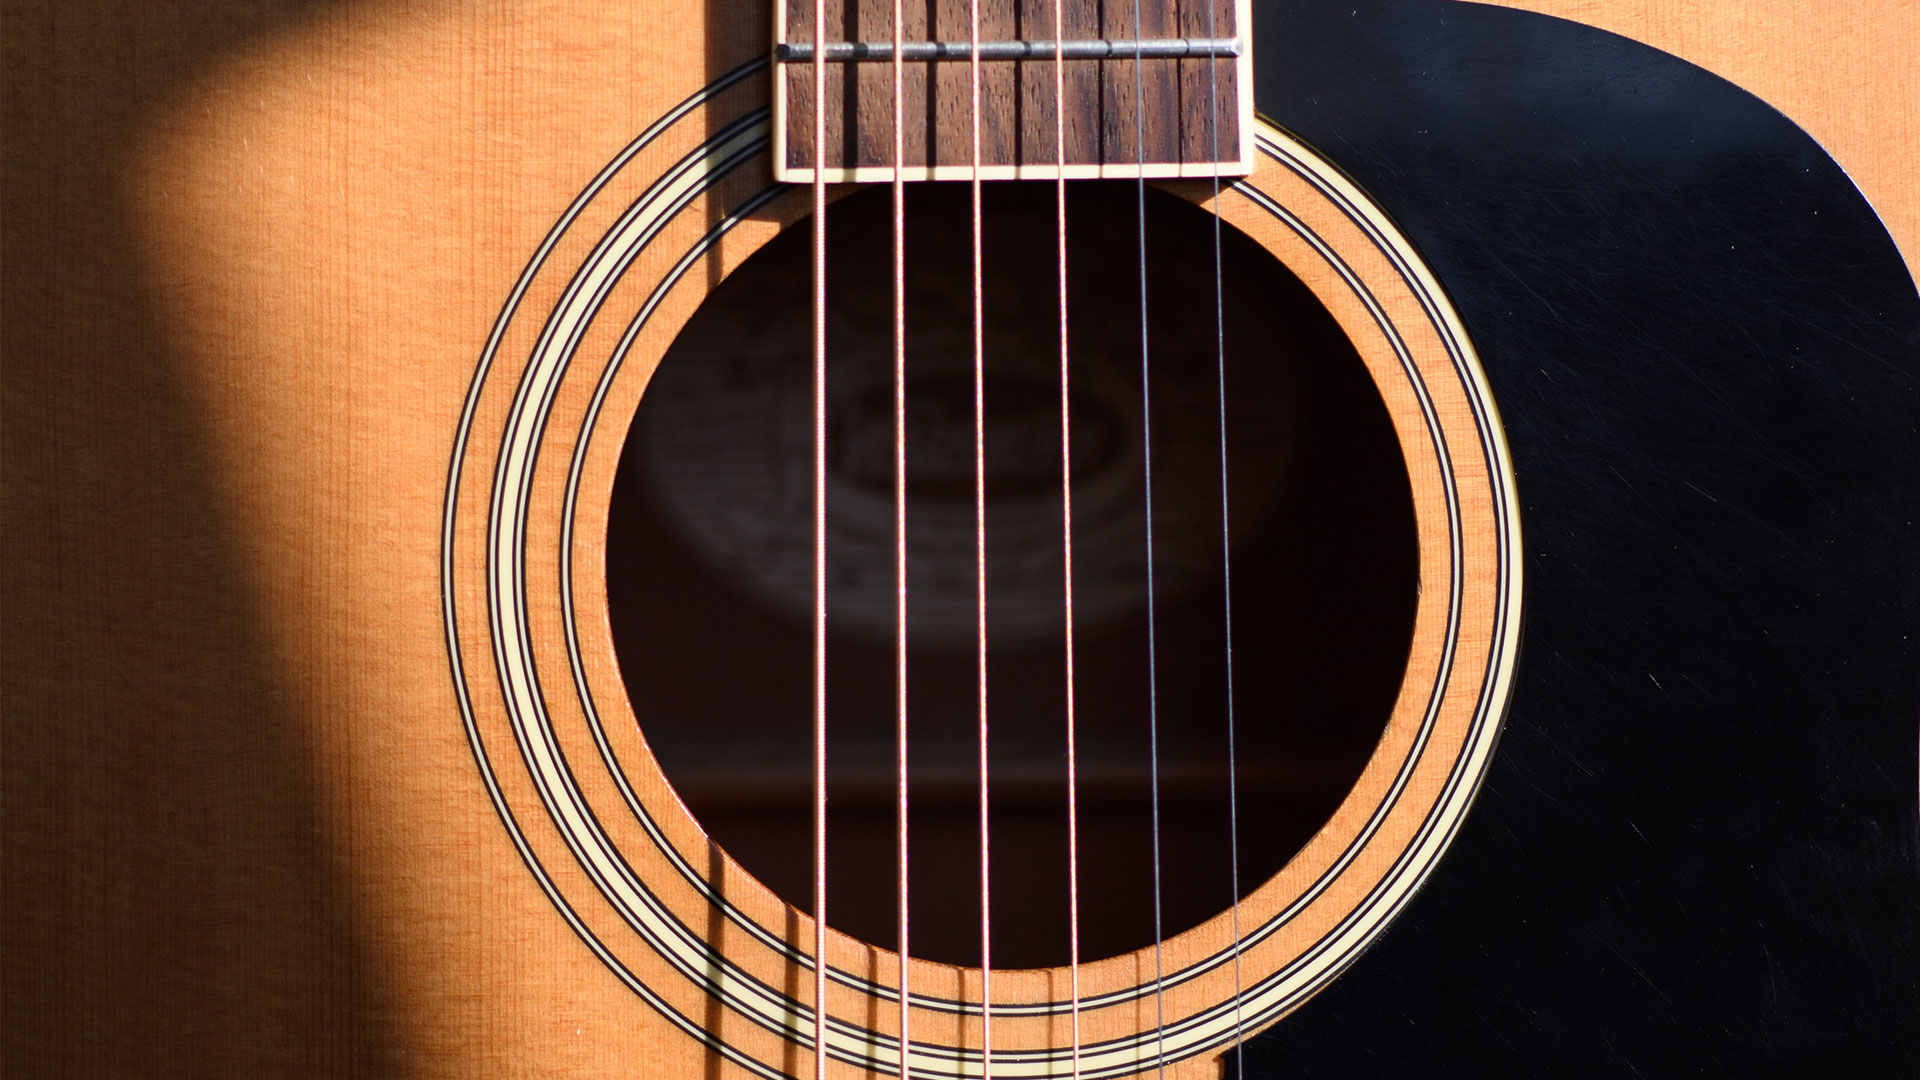 guitar close up